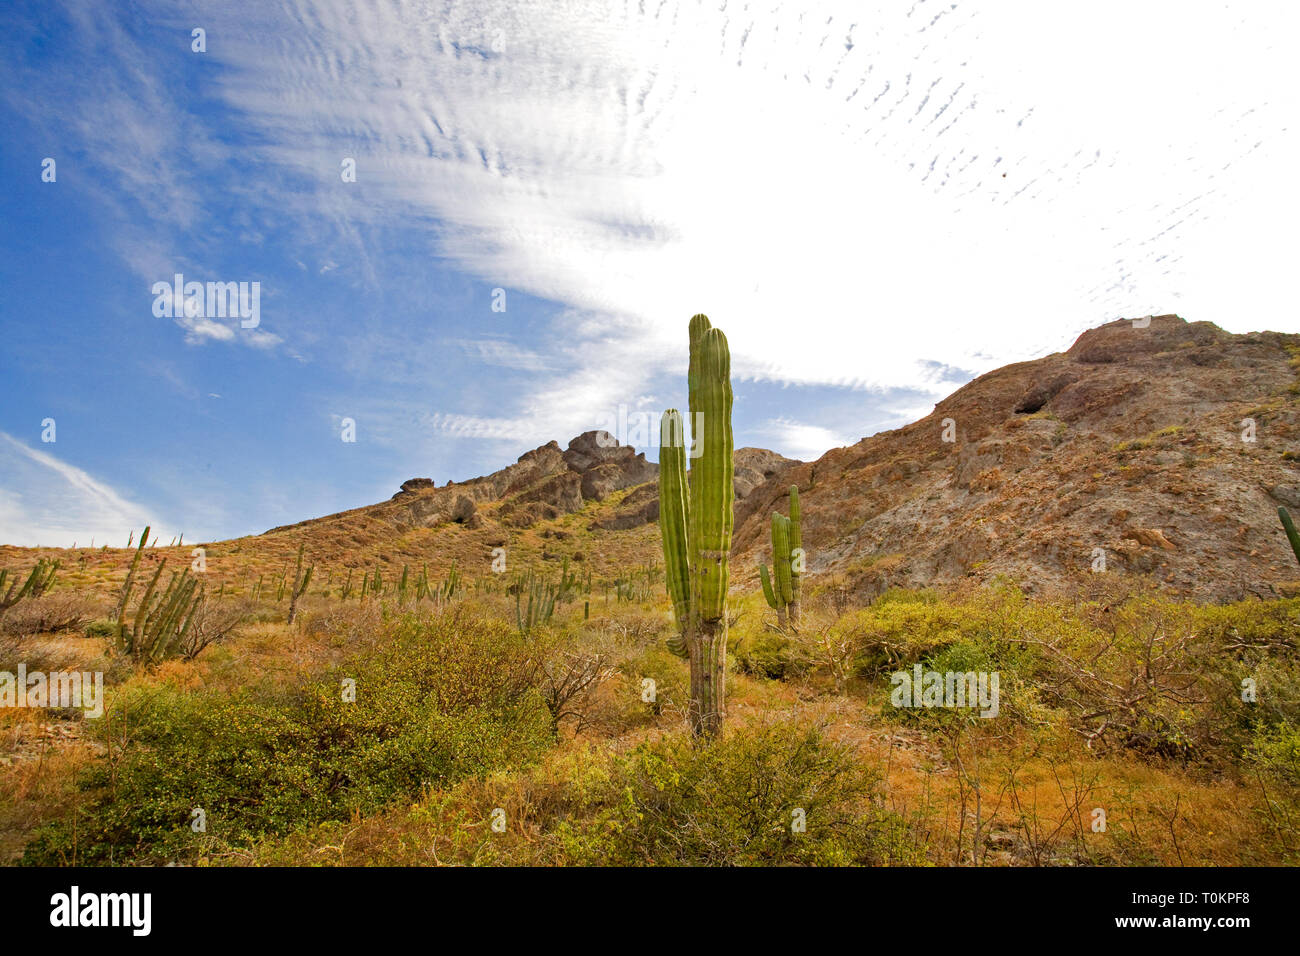 Cardon Cactus, Pachycereus Pringlei, noto anche come il gigante messicano cardon o elephant cactus, blanketing di una collina nella zona meridionale di Baja Califo Foto Stock